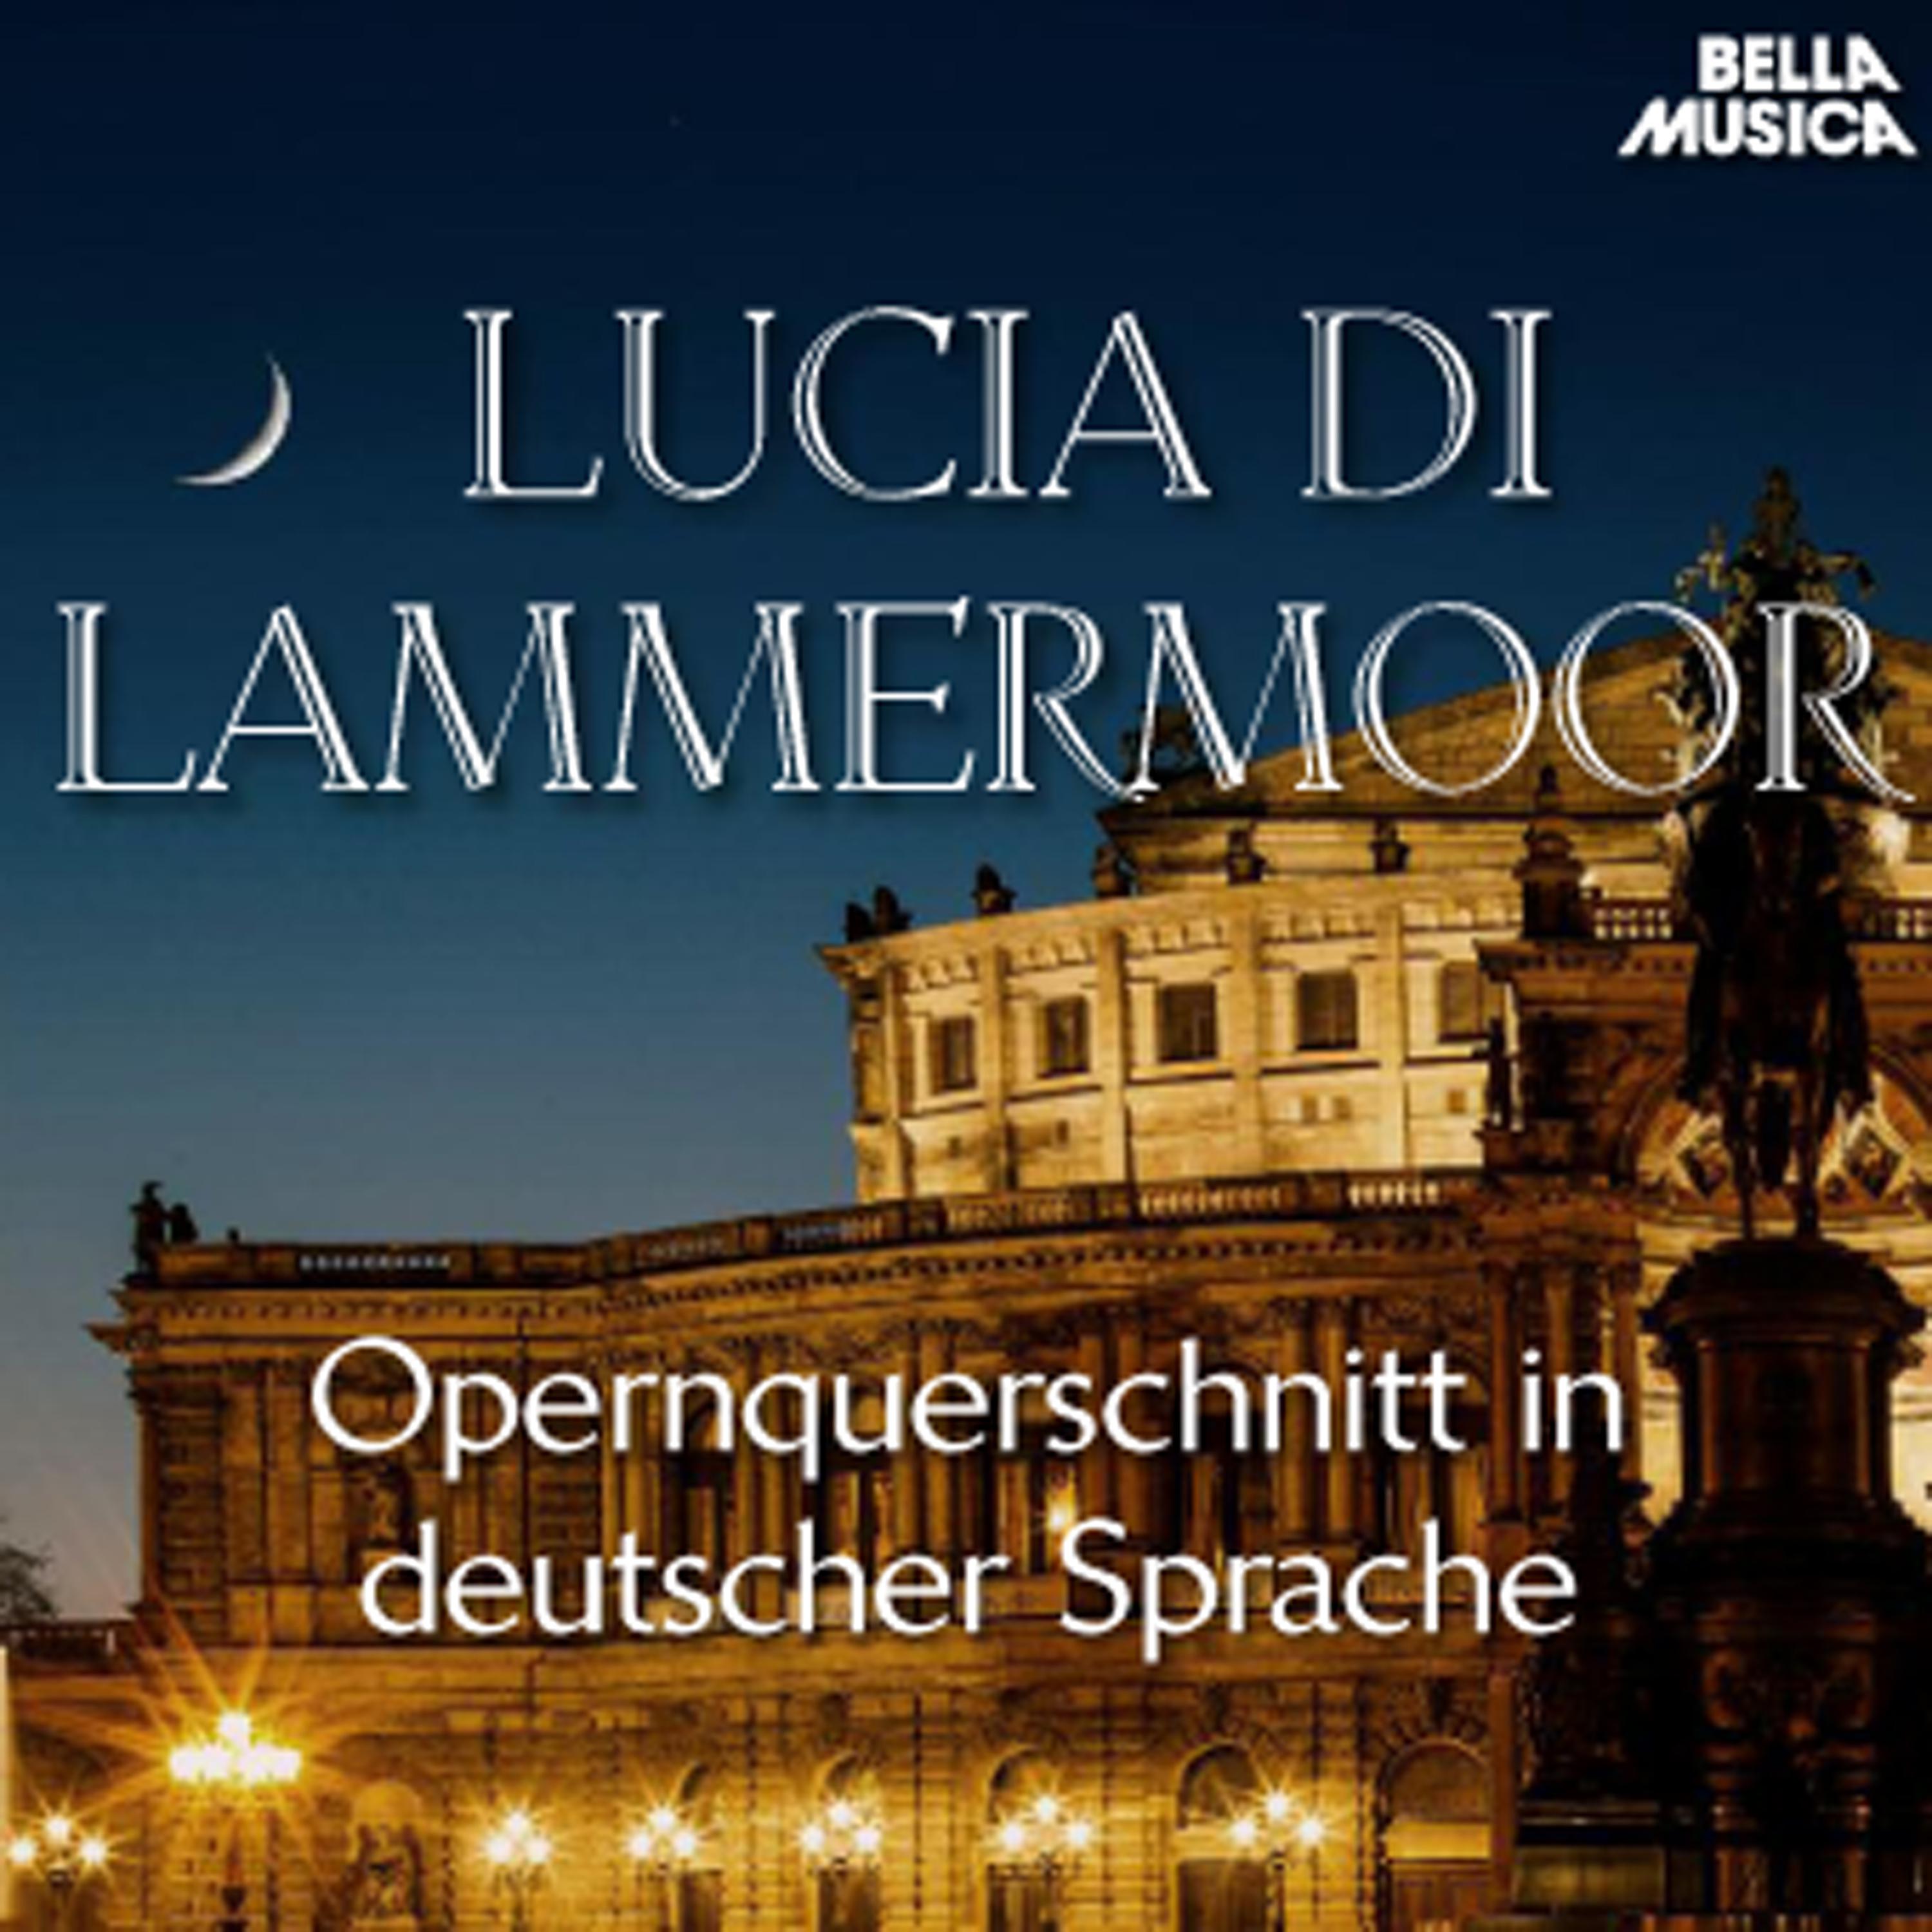 Lucia di Lammermoor: Dir t ne lauter Jubelklang